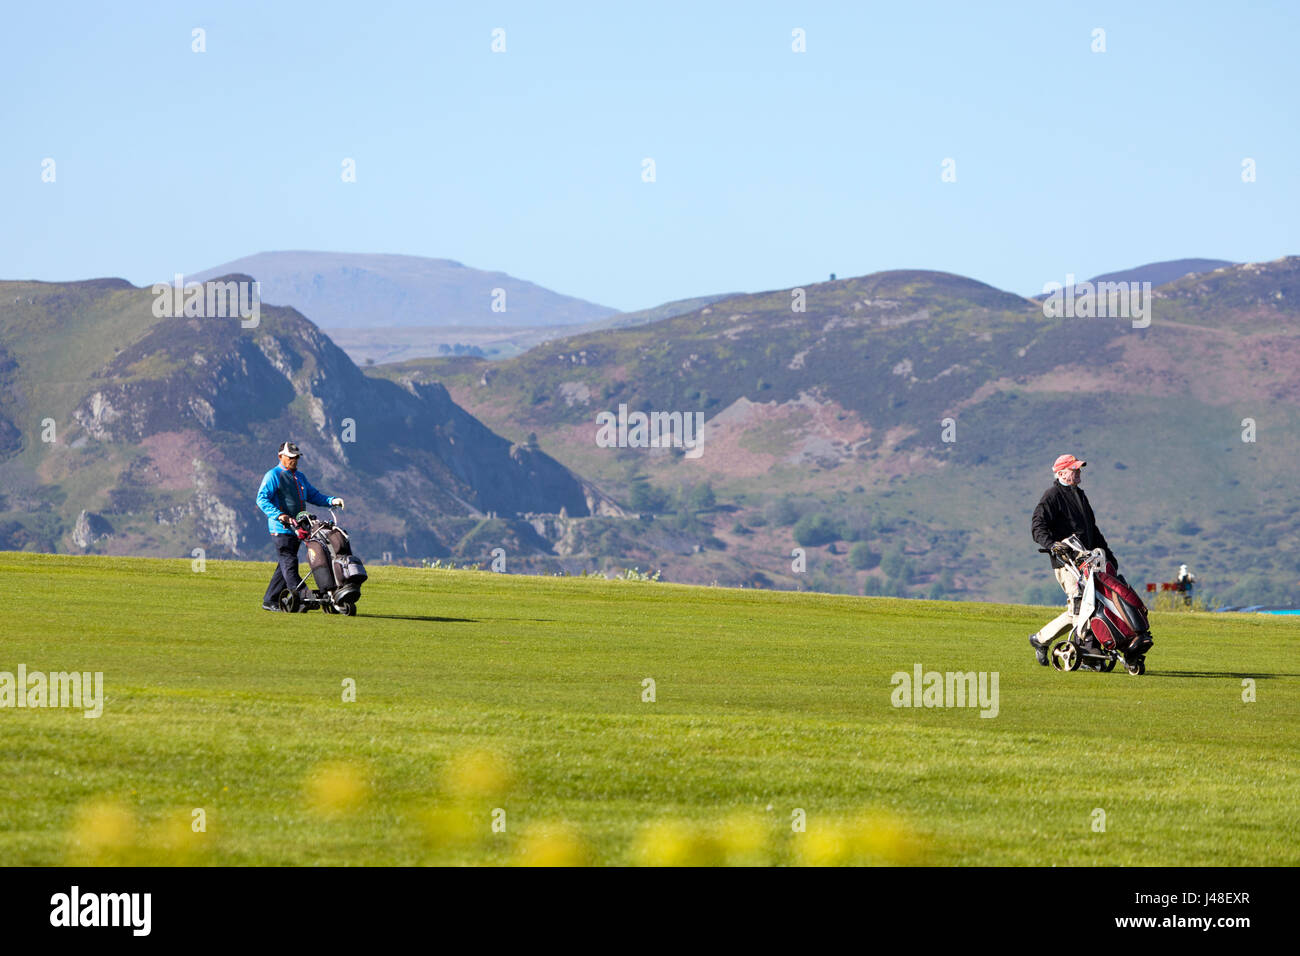 La pittoresque et parcours de golf de Gofl de Llandudno, situé à côté de la mer et dominé par la montagne situé dans le comté de Conwy, au nord du Pays de Galles Banque D'Images